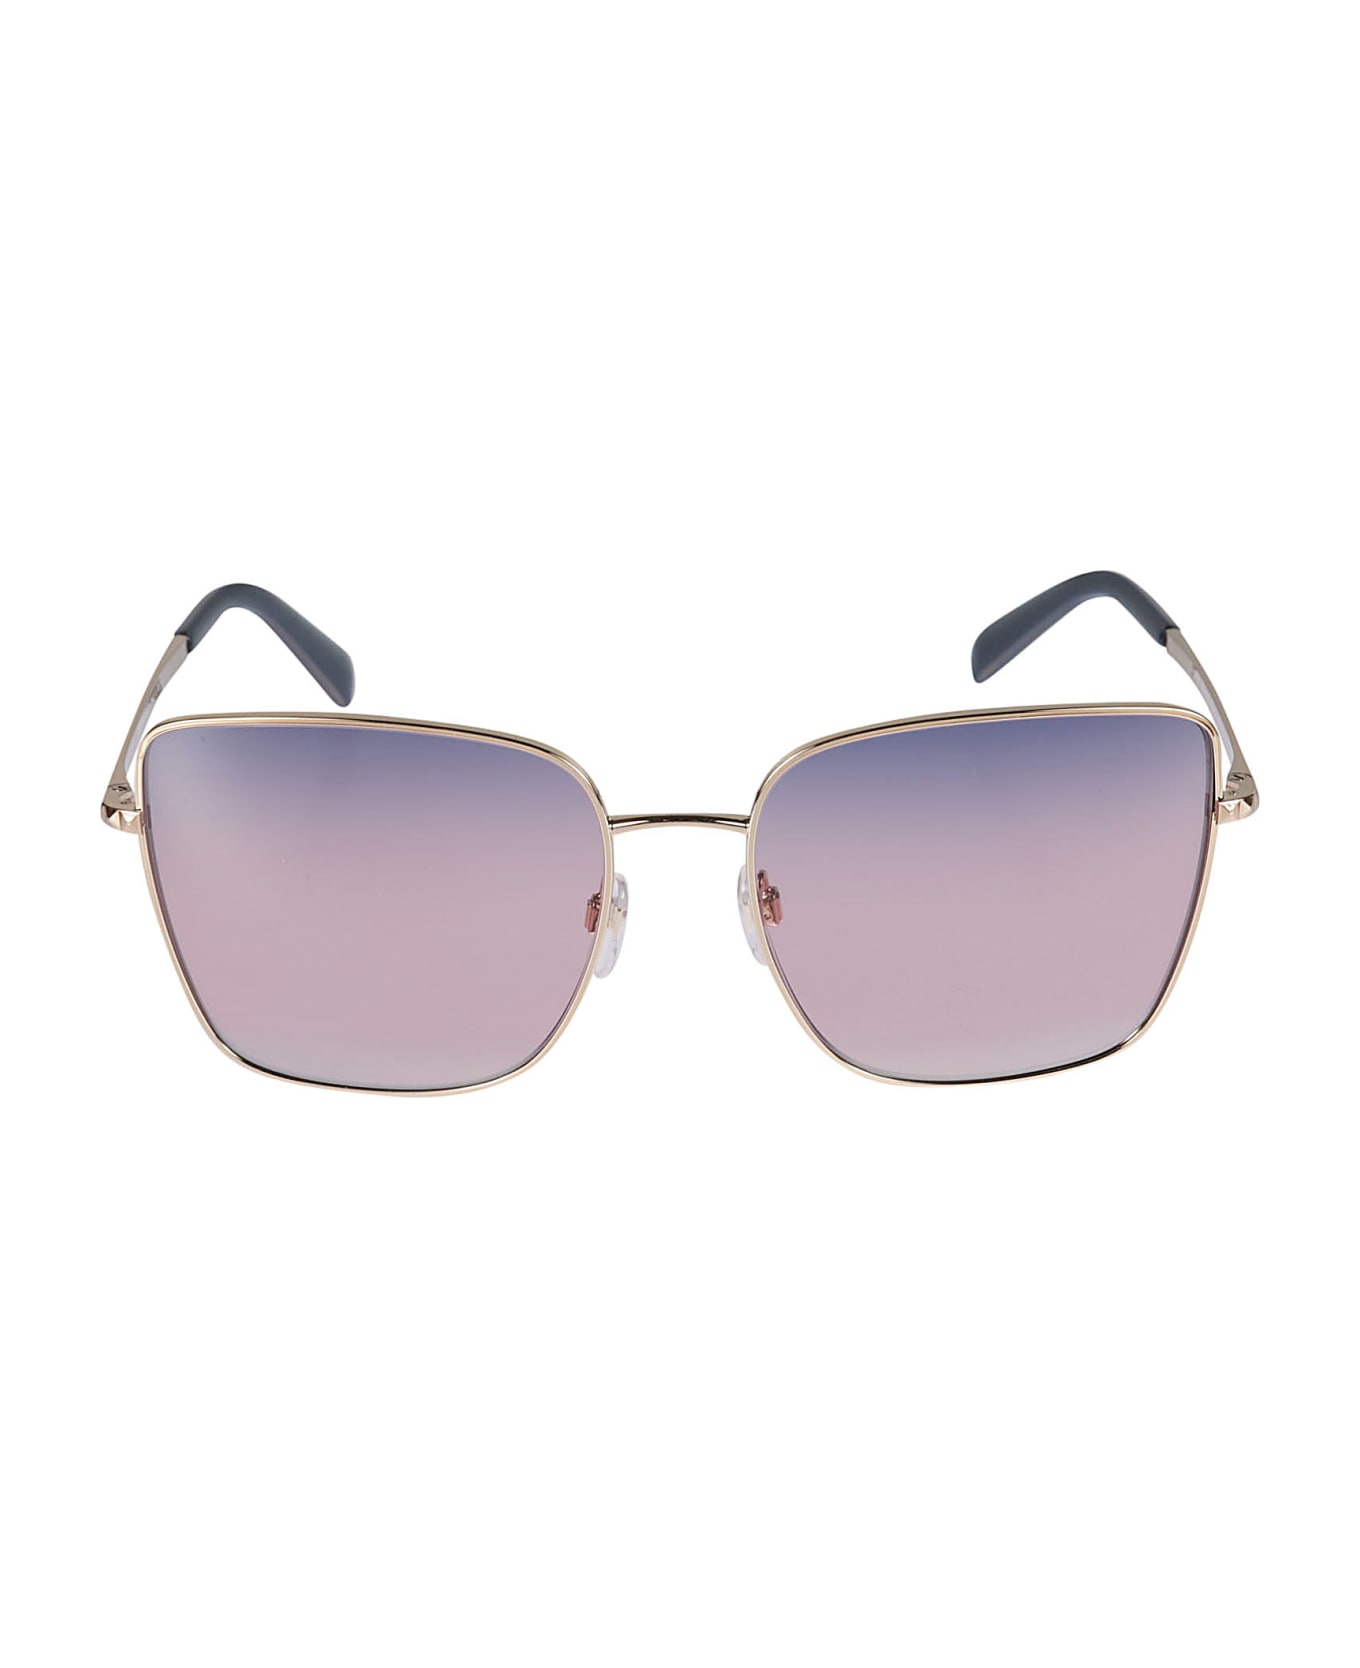 Valentino Eyewear Sole3004/16 Sunglasses - N/A